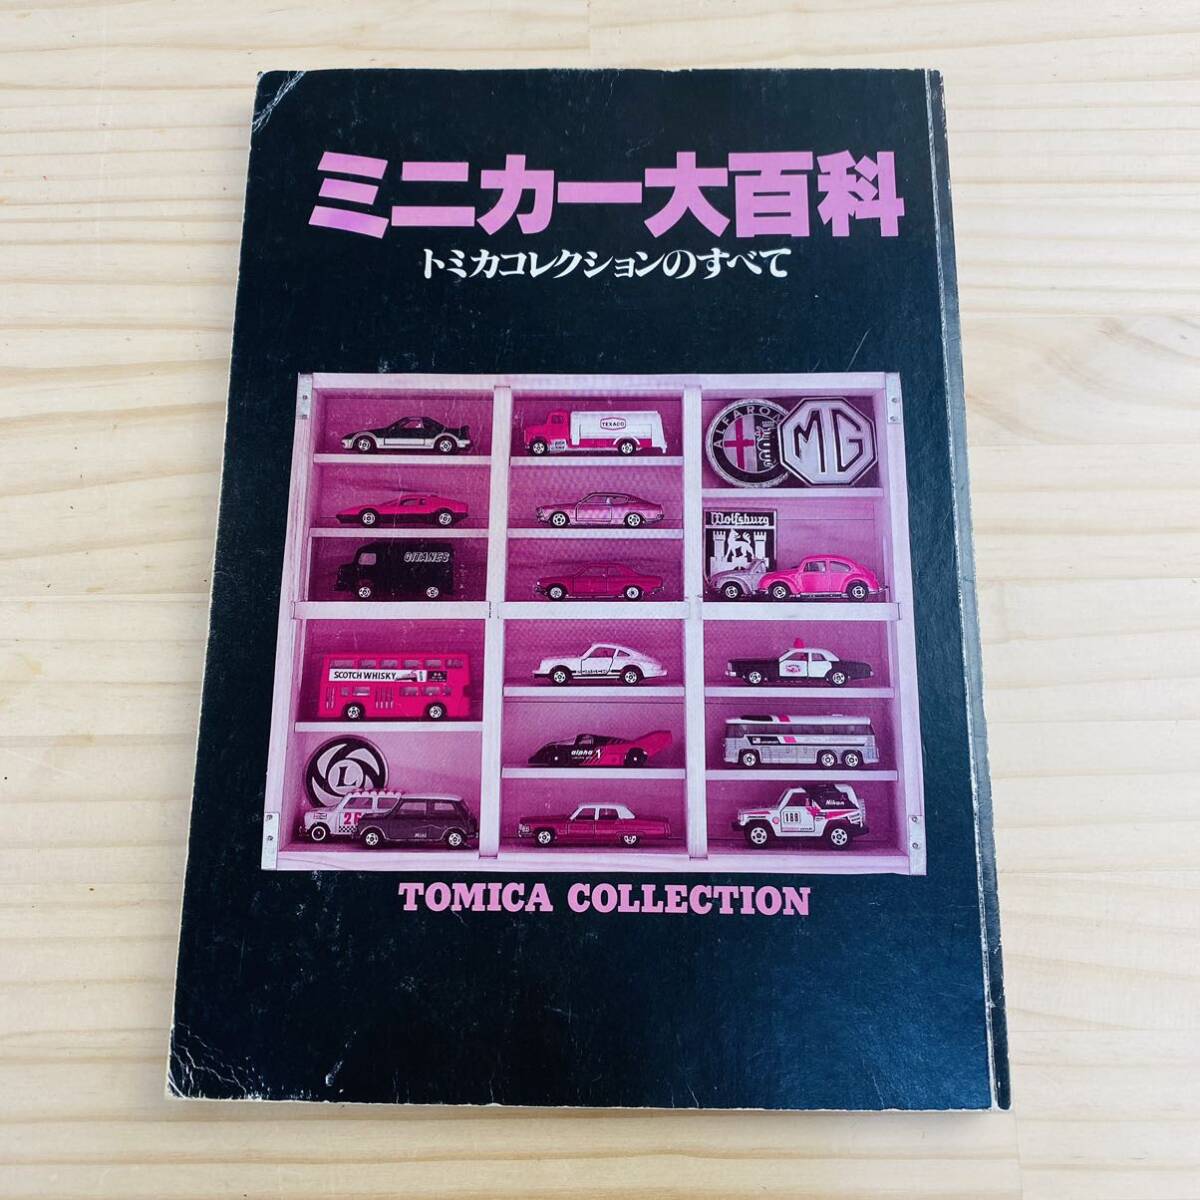 E37904 カバー欠品 ミニカー大百科 トミカコレクションのすべて TOMICA COLLECTIONの画像1